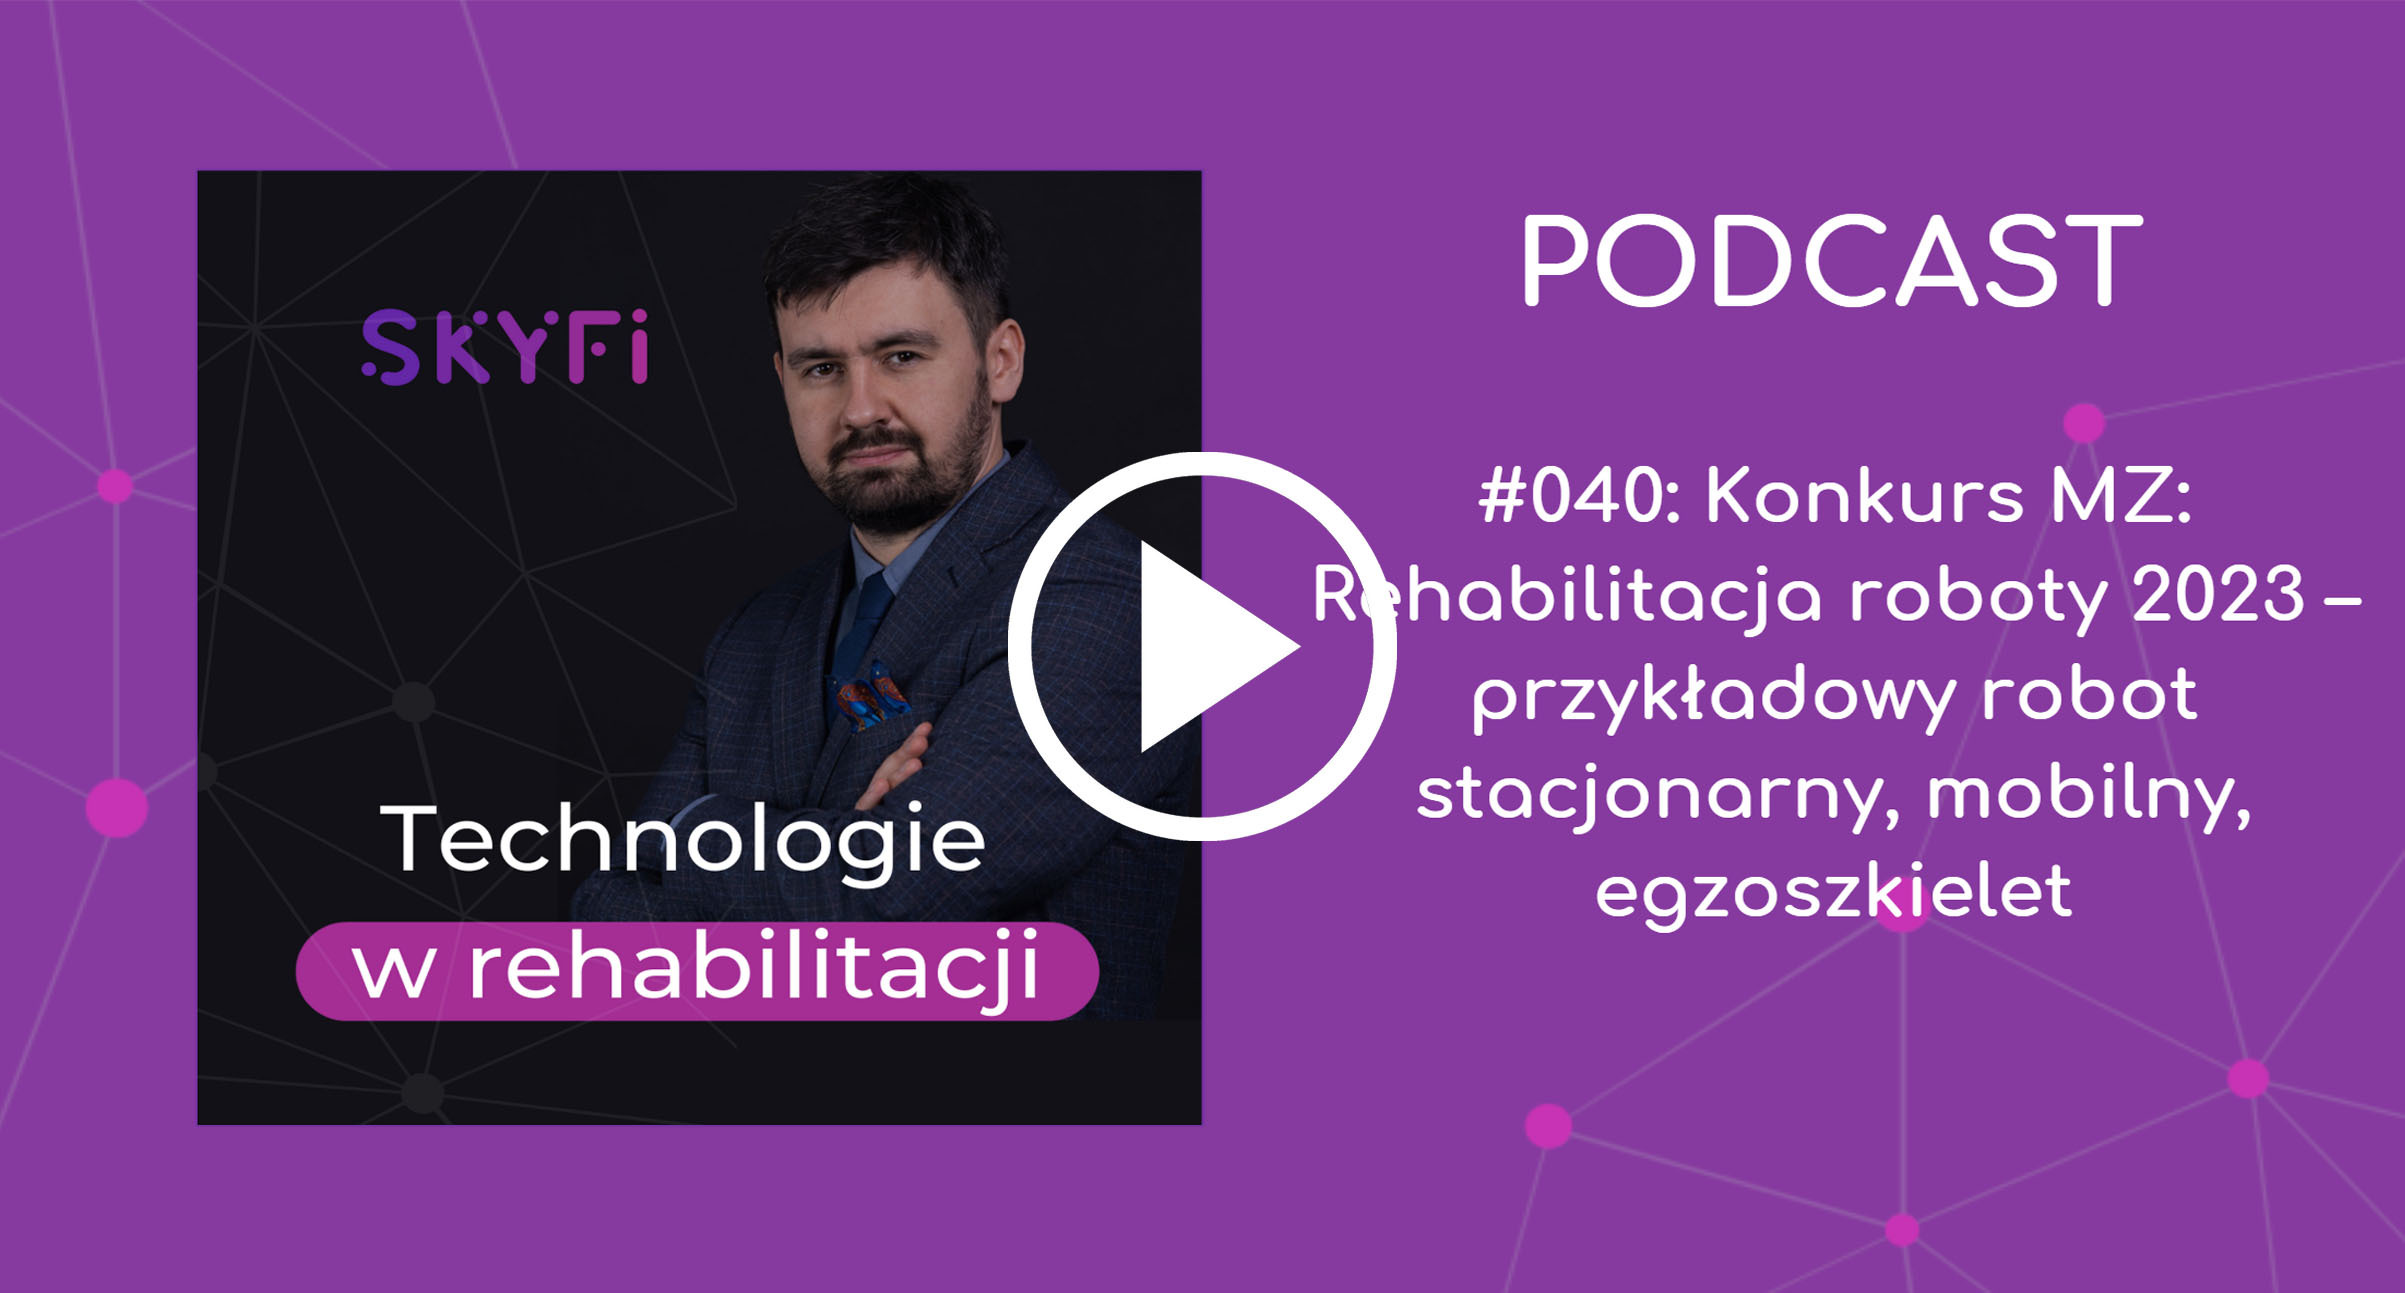 Podcast-40-konkurs-mz-rehabilitacja-robotyczna-roboty-rehabilitacyjne-Skyfi